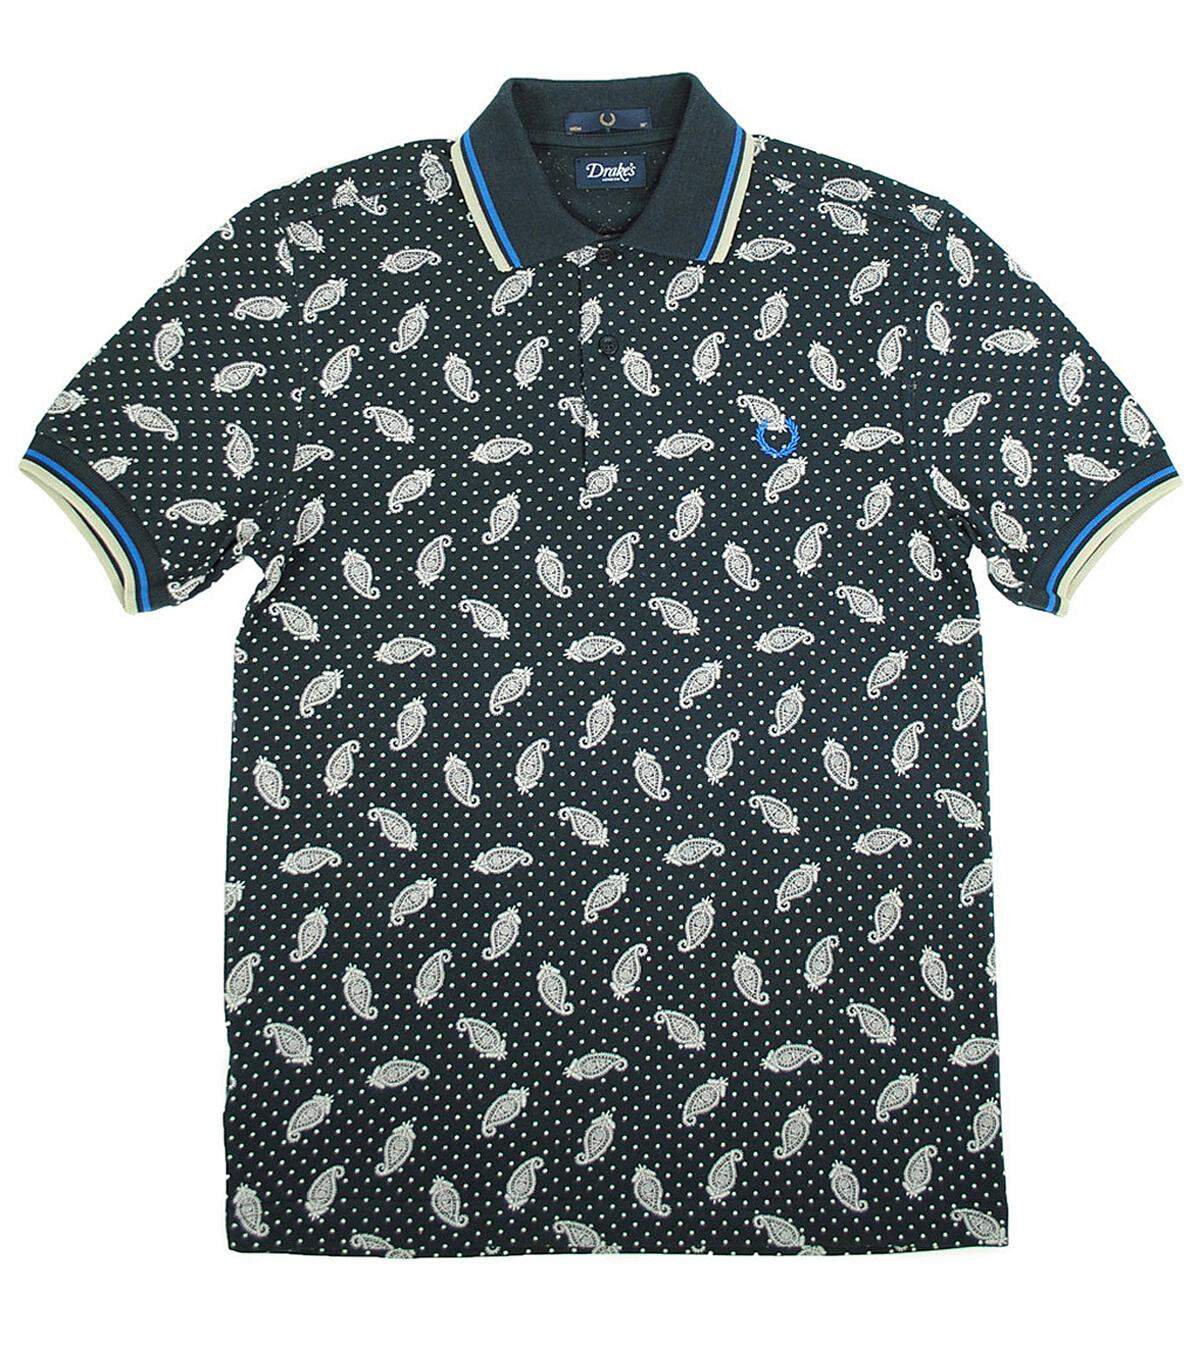 Natürlich wird nicht nur Lacoste mit dem kurzärmeligen Polo-Shirt assoziiert. Der Brite Fred Perry, ebenfalls Tennisspieler, wählte als Logo für seine Hemden einen Lorbeerkranz, den er 1934 beim All England Cup erhalten hatte.